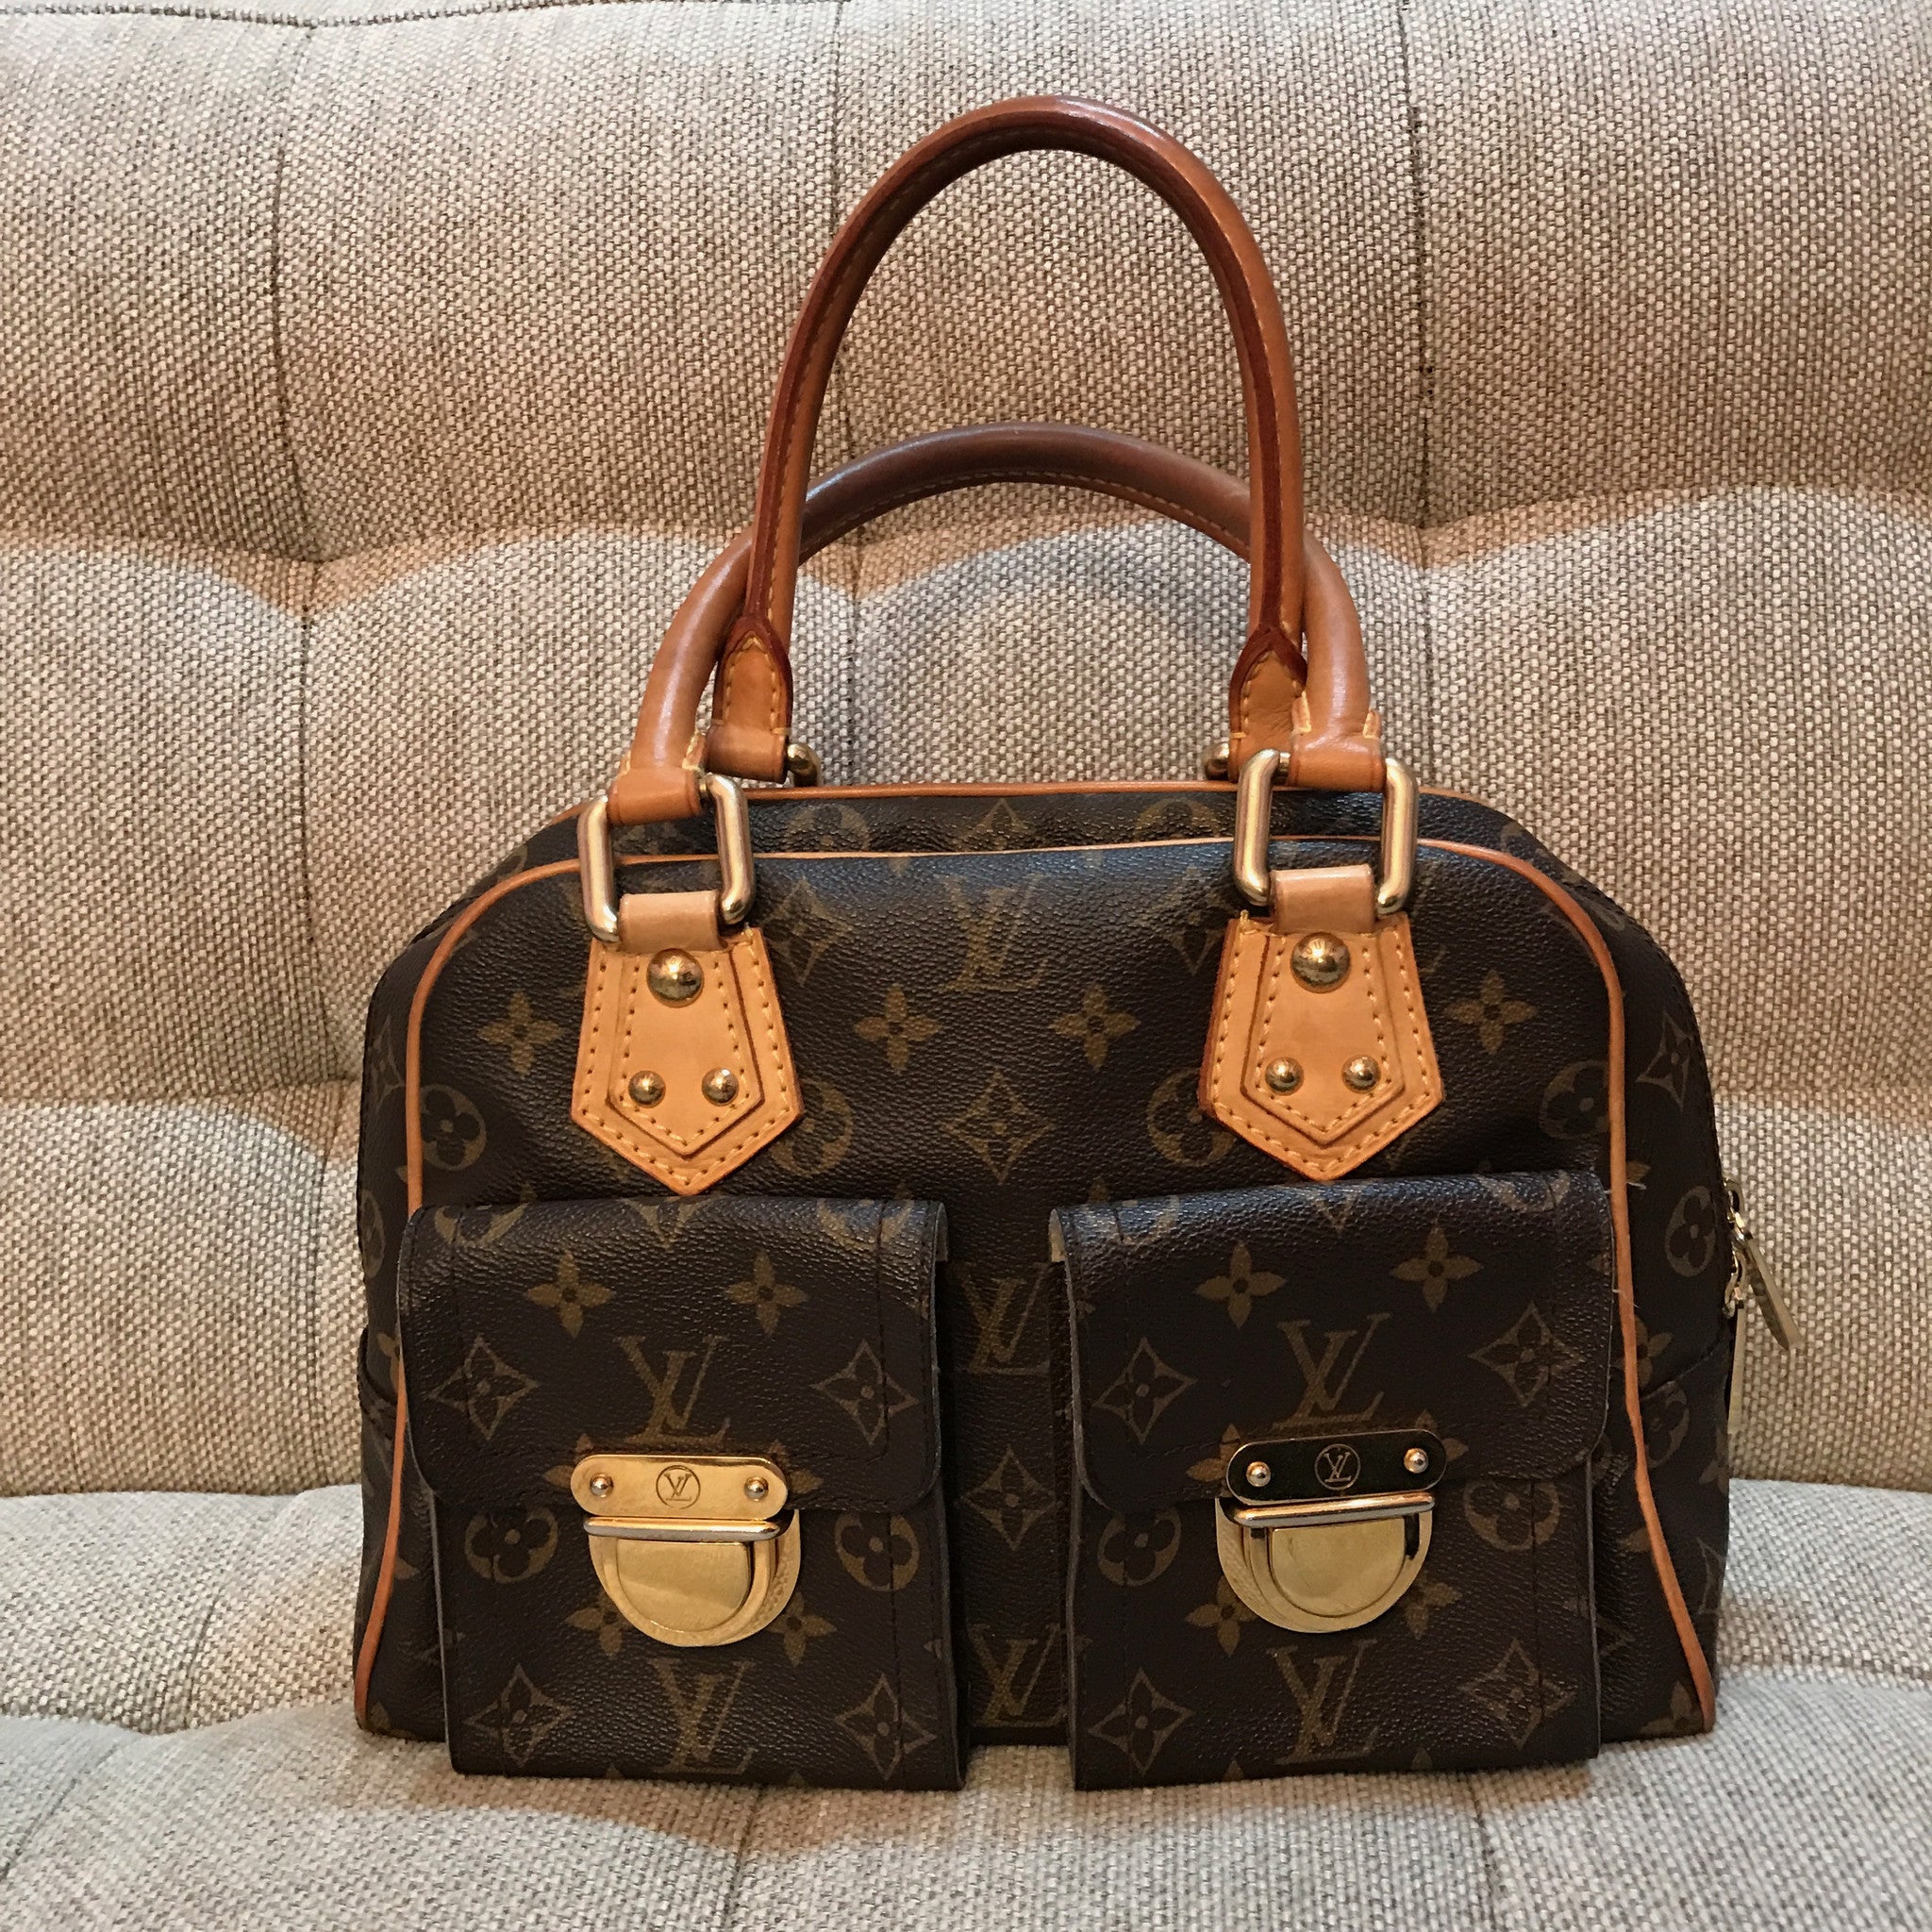 Louis Vuitton Manhattan PM – Beccas Bags